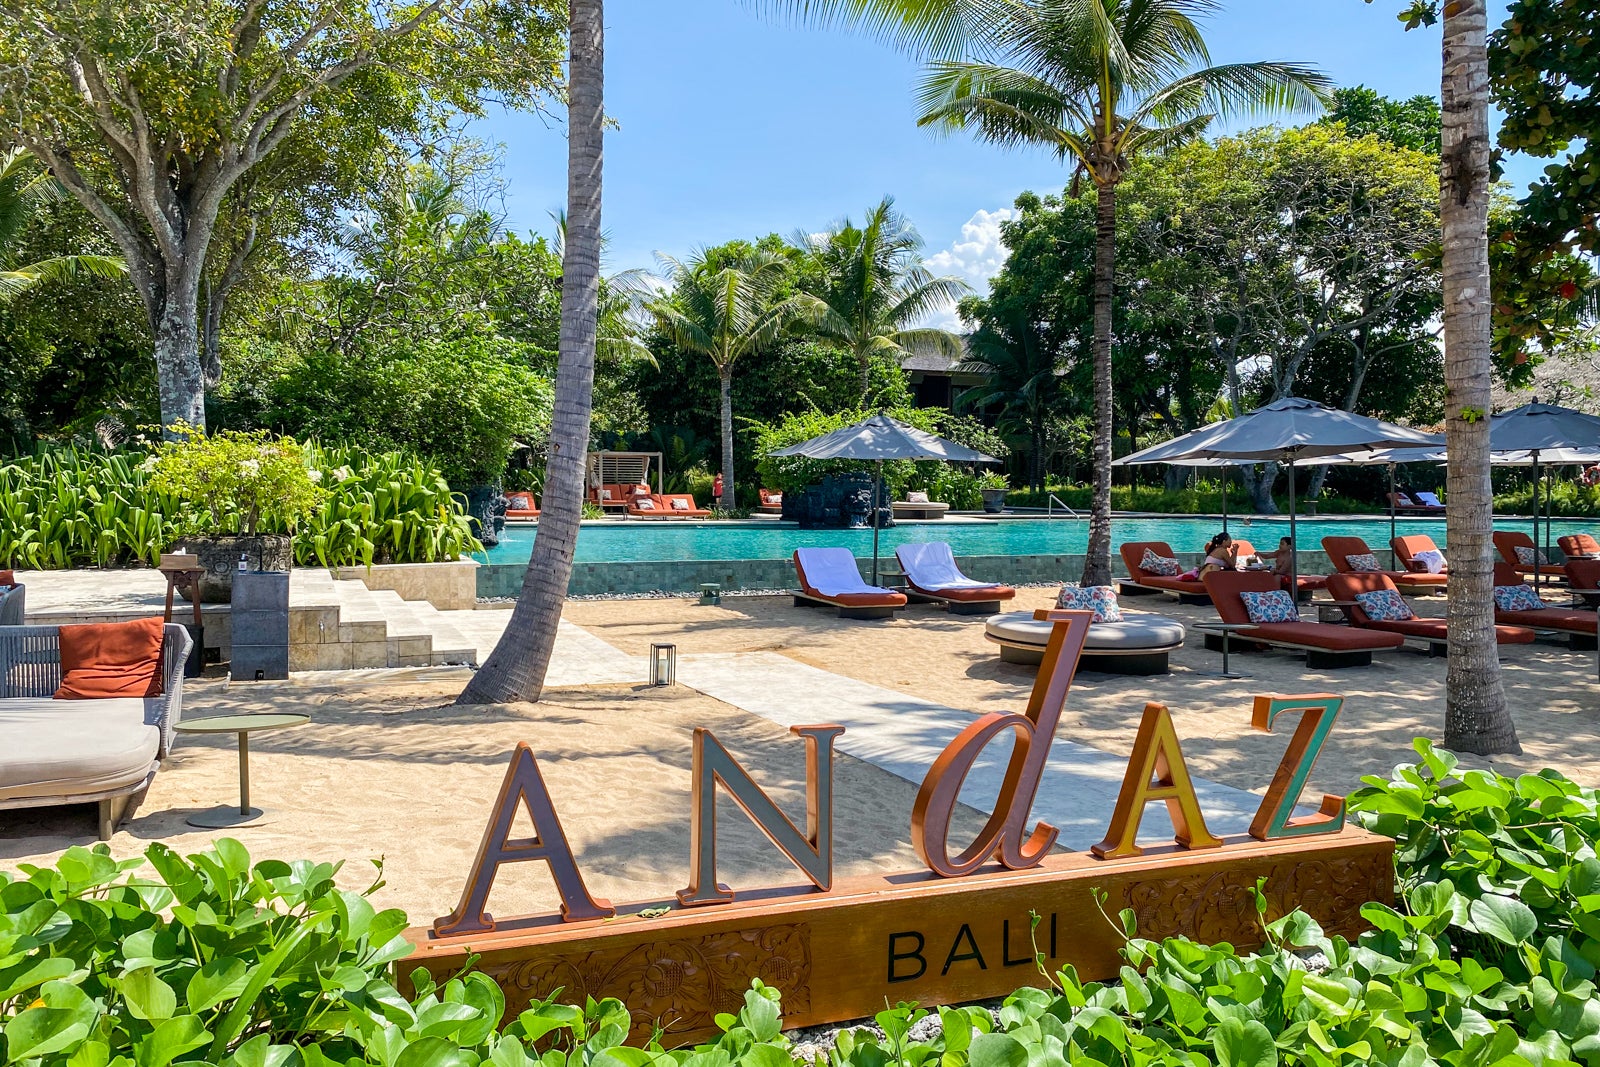 Andaz Bali pool